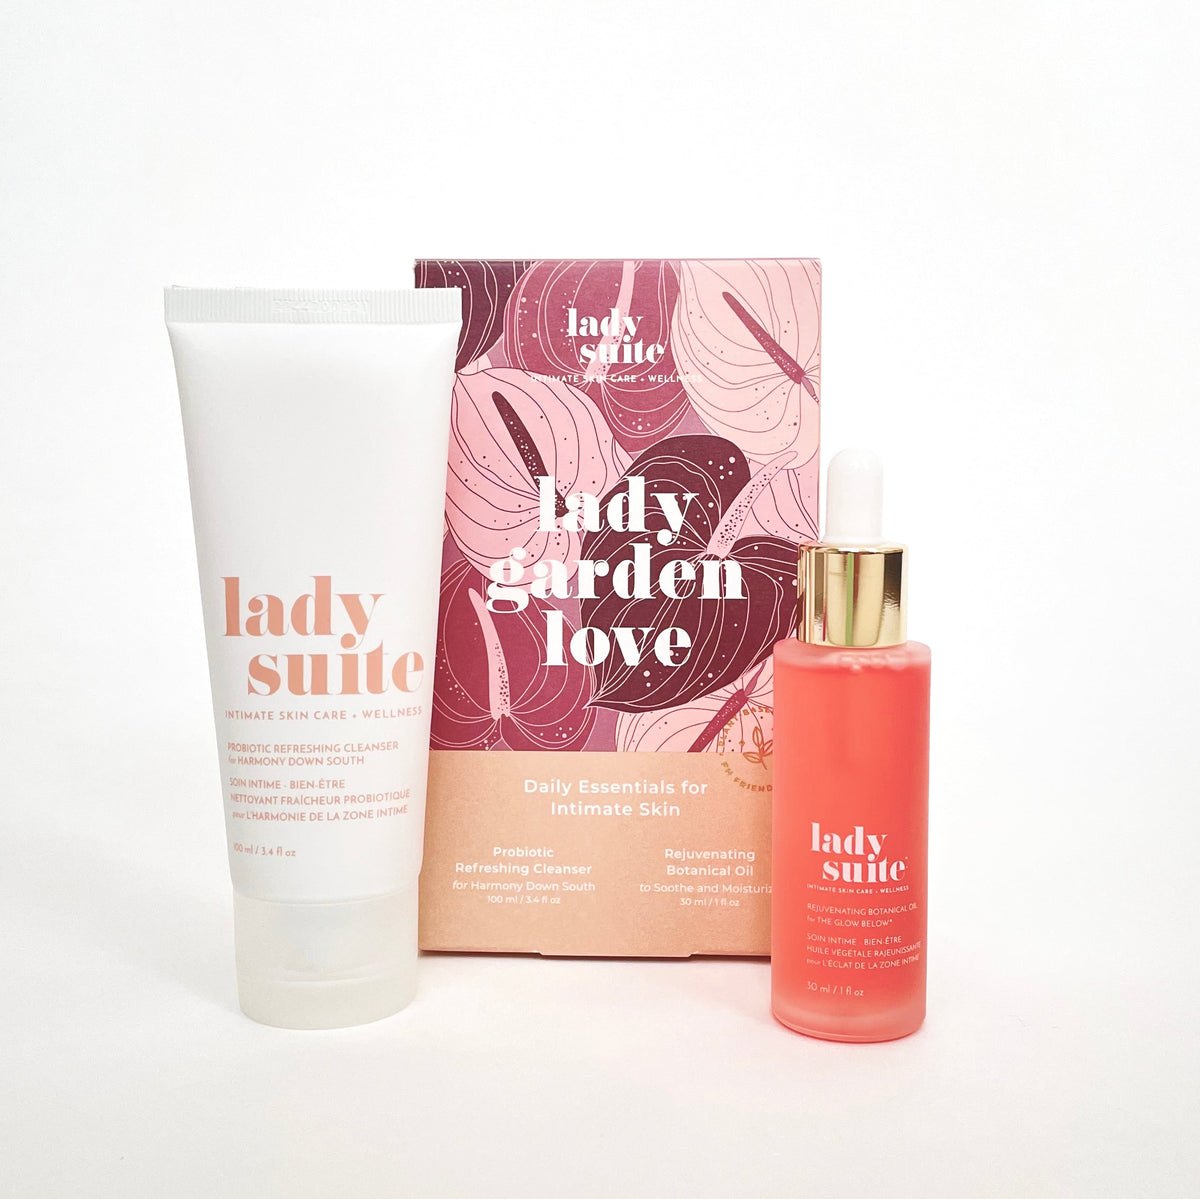 Lady Garden Love: Daily Essentials